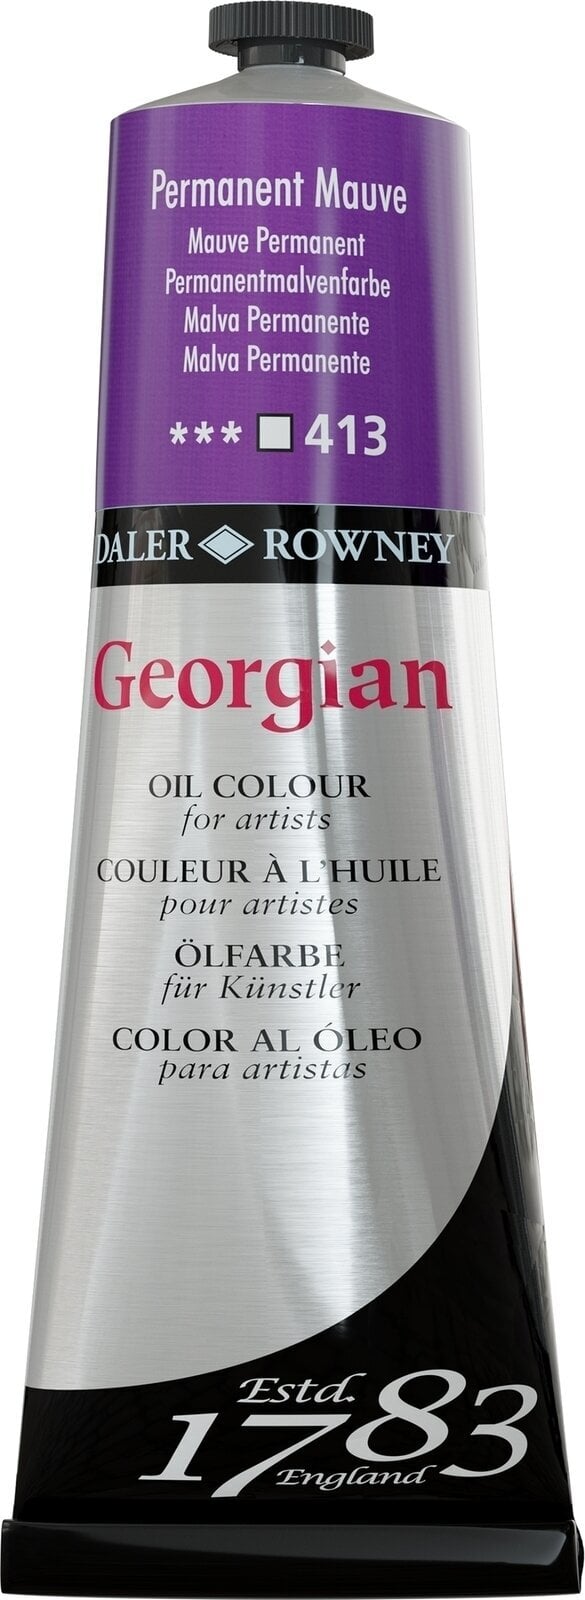 Oil colour Daler Rowney Georgian Oil Paint Permanent Mauve 225 ml 1 pc